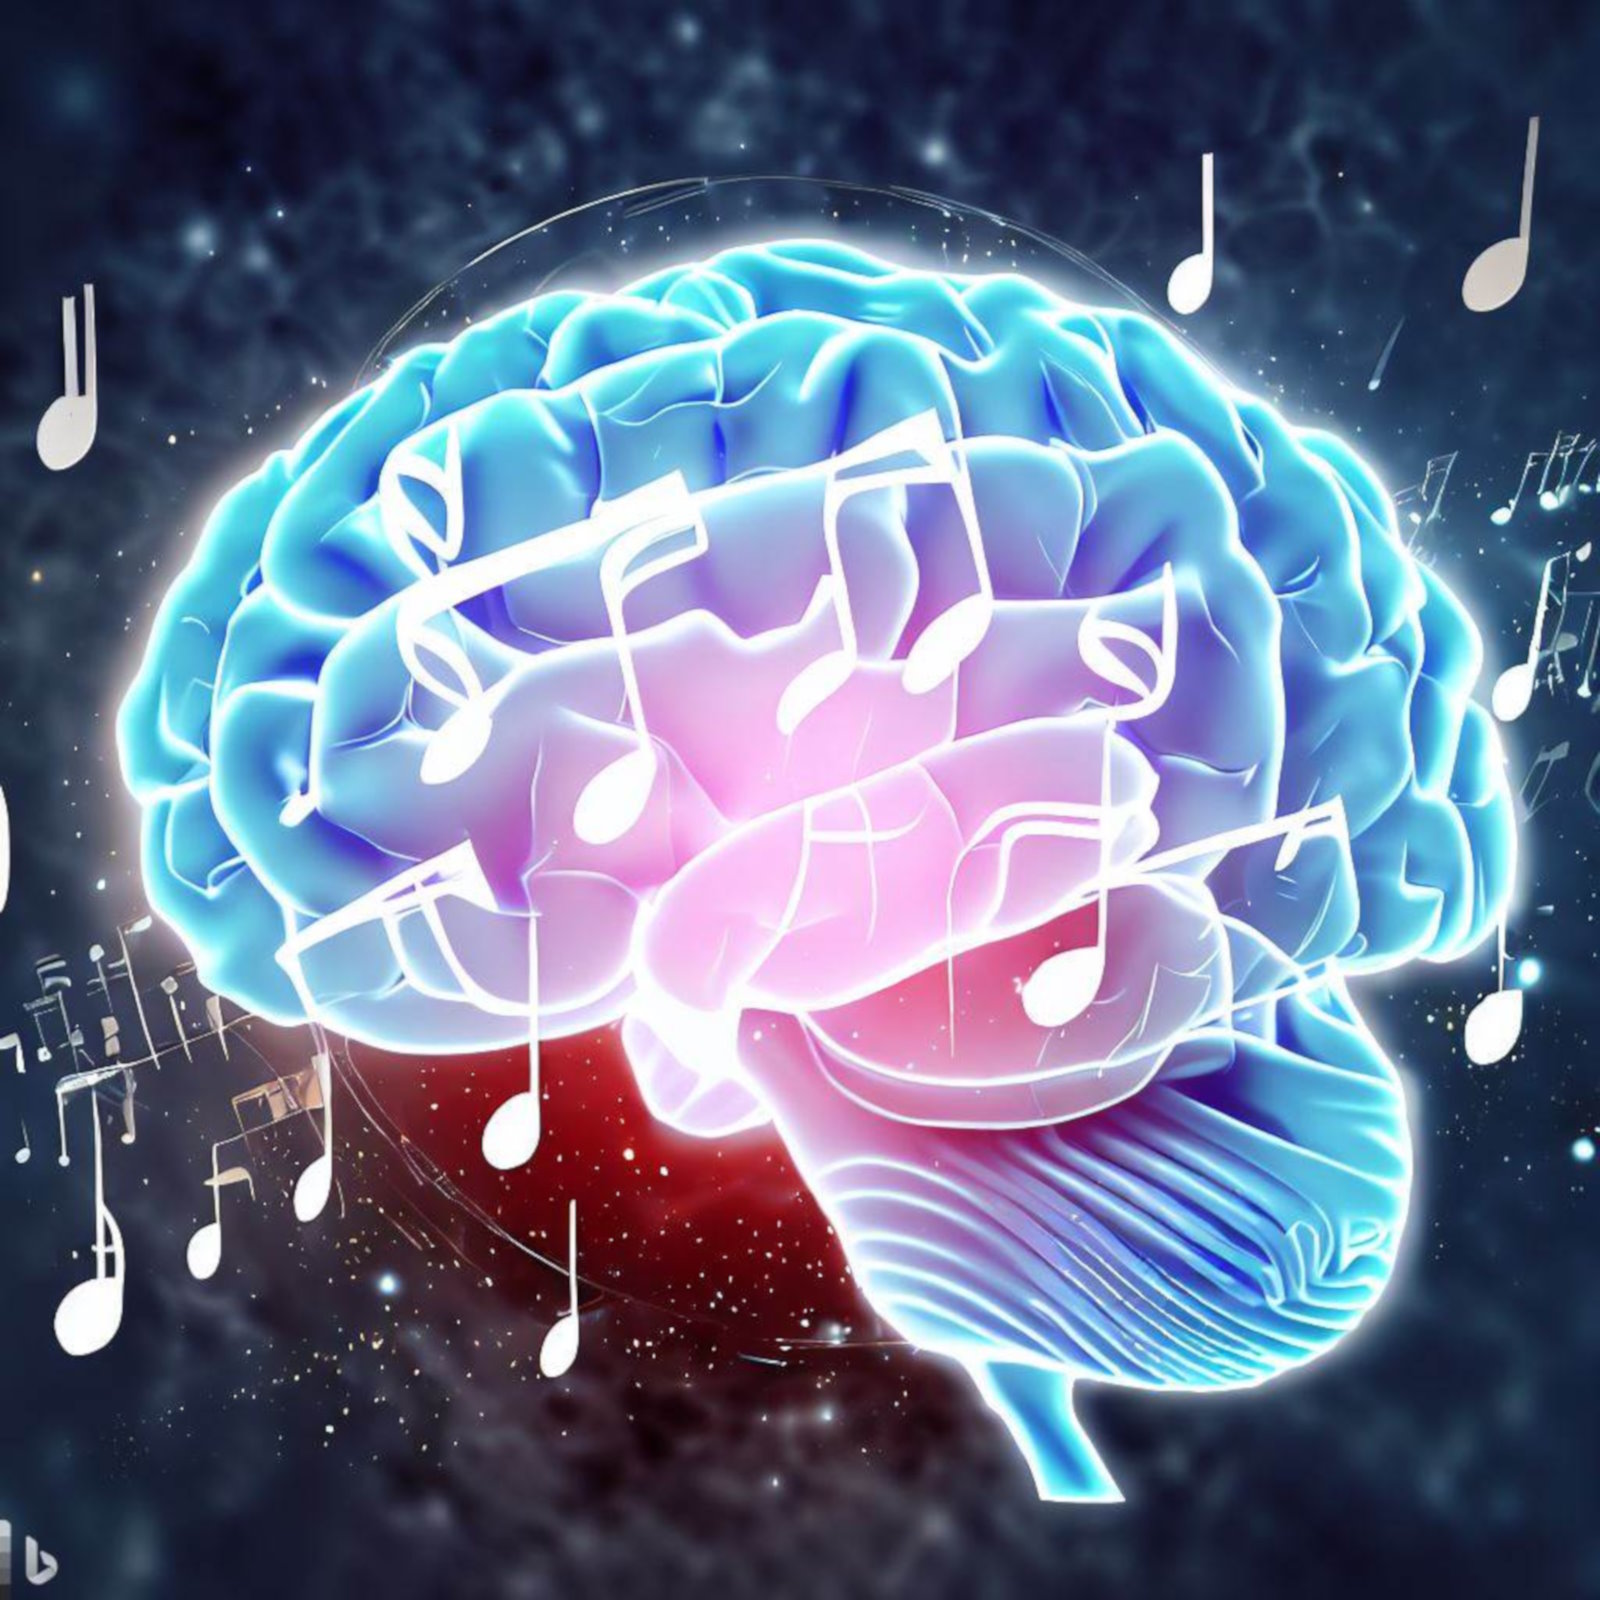 Une IA a pu reconstruire une chanson à partir d’enregistrements de l’activité cérébrale. © E. Back, Bing Image Creator